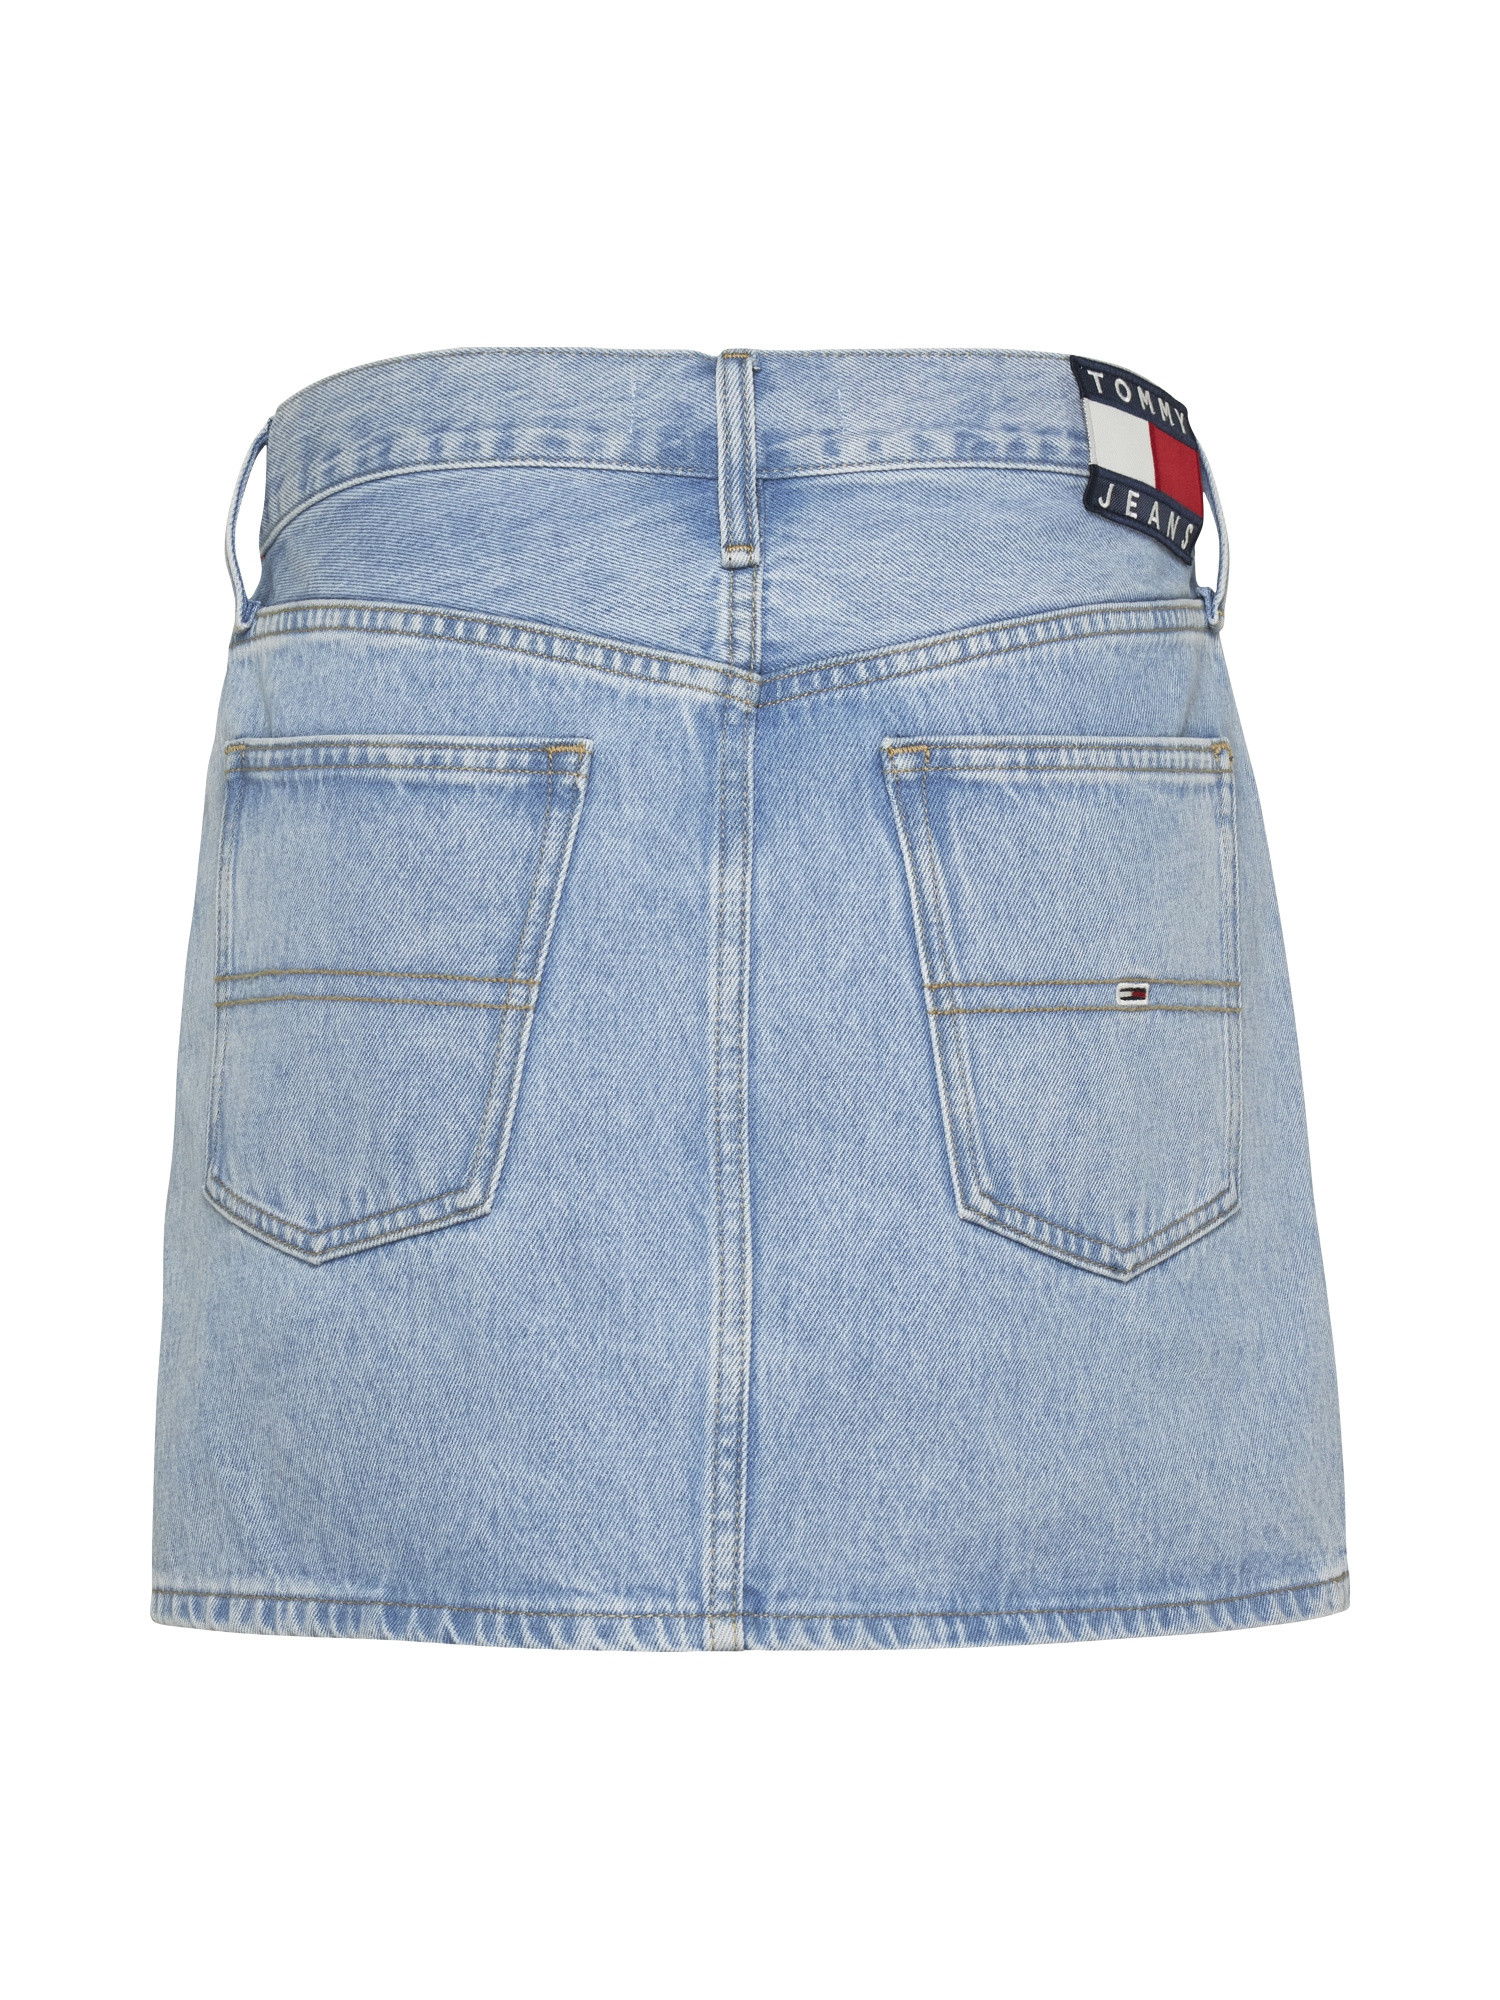 Tommy Jeans - Five-pocket denim miniskirt, Denim, large image number 1